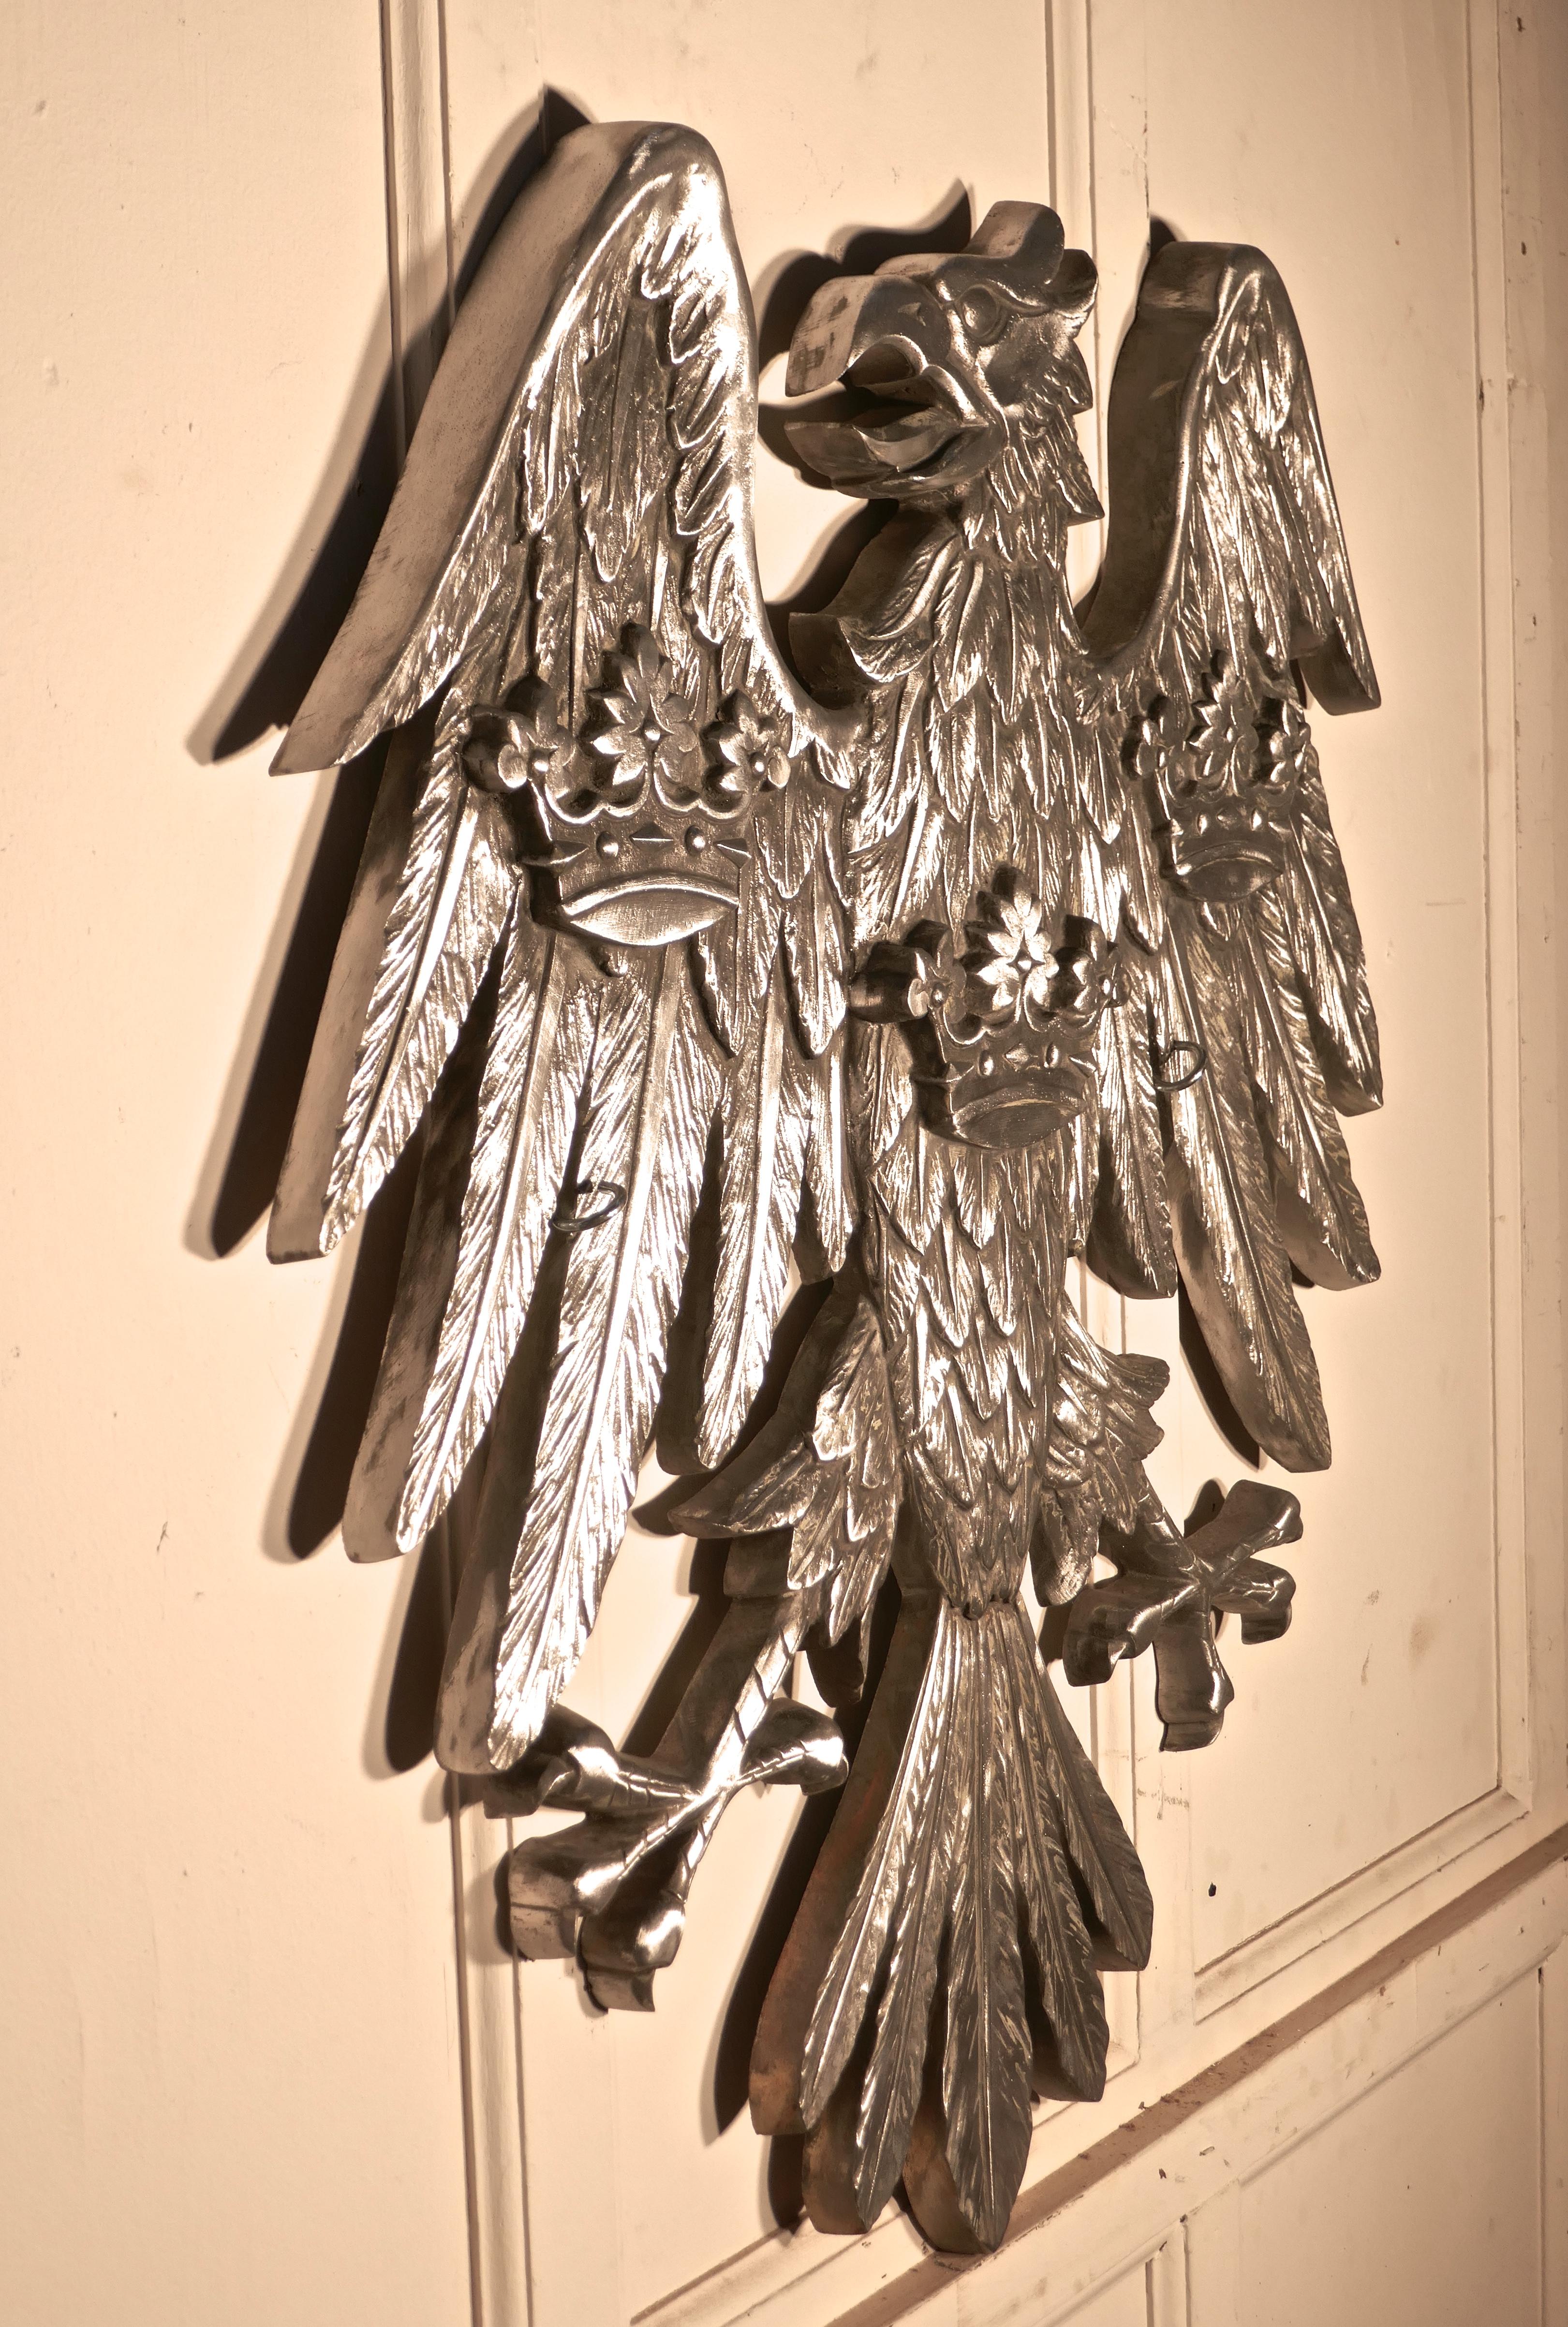 Großer gespreizter Adler als Wandtafel, heraldisches Handelszeichen

Dies ist ein sehr großes Stück, es ist in poliertem Silber Metall gemacht, würde die Plakette von der Barclays Bank Unternehmen angezeigt worden
Unser Riesenadler hat 3 Kronen